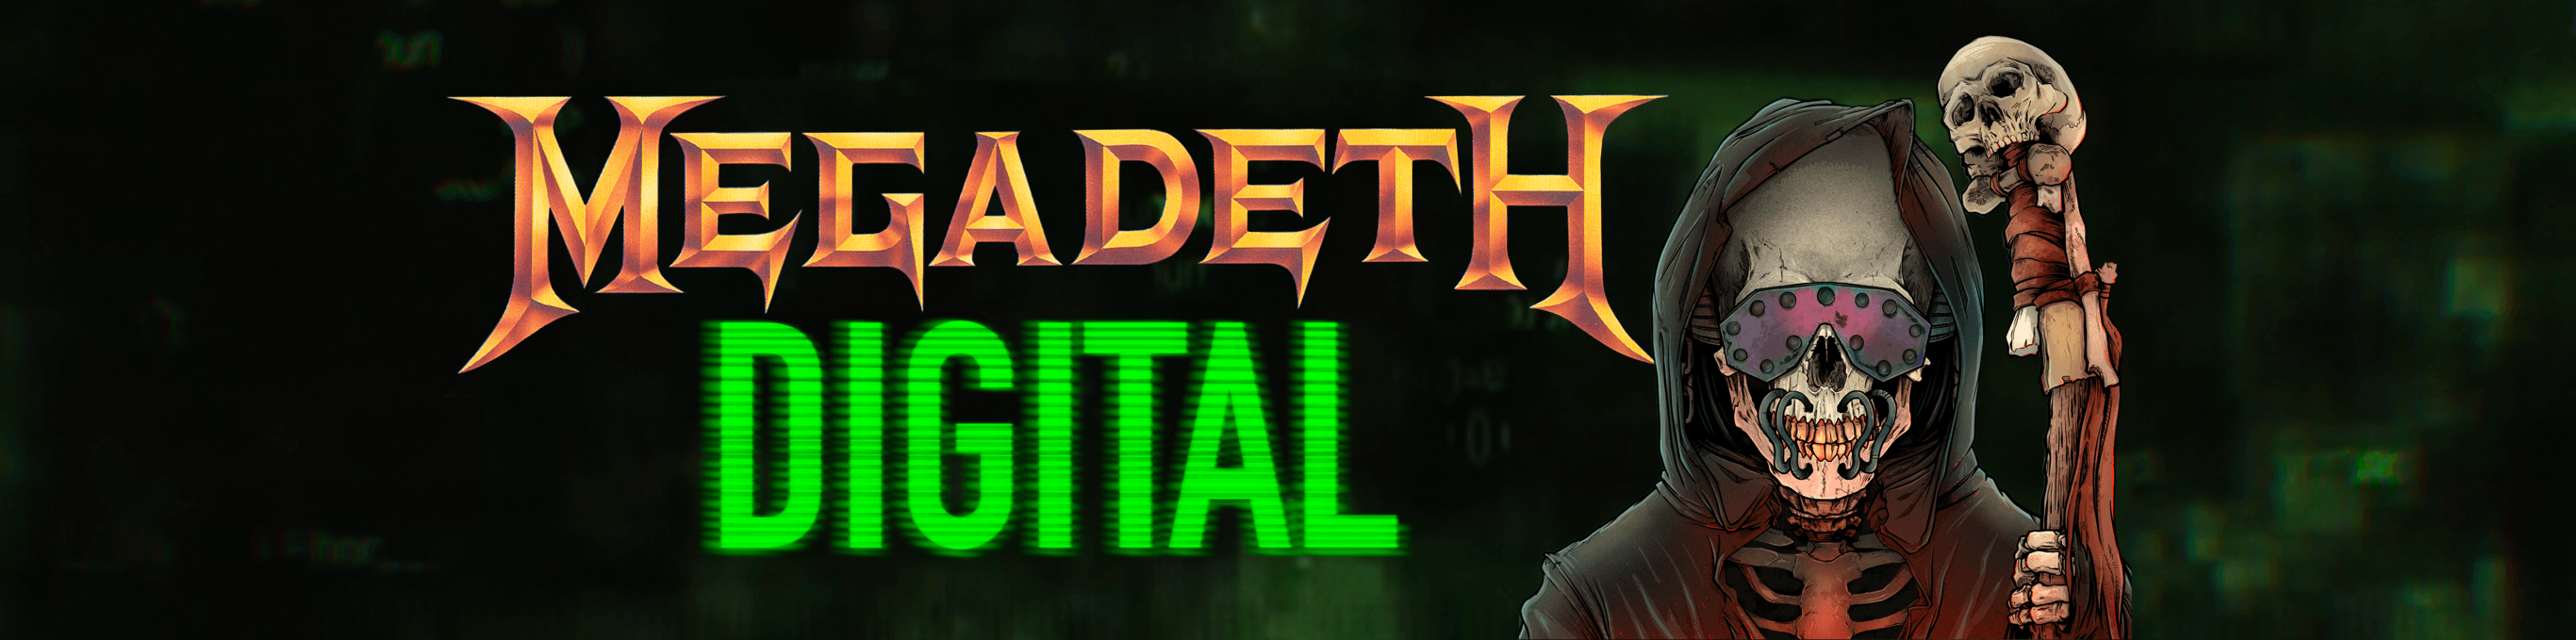 Megadeth_Digital banner